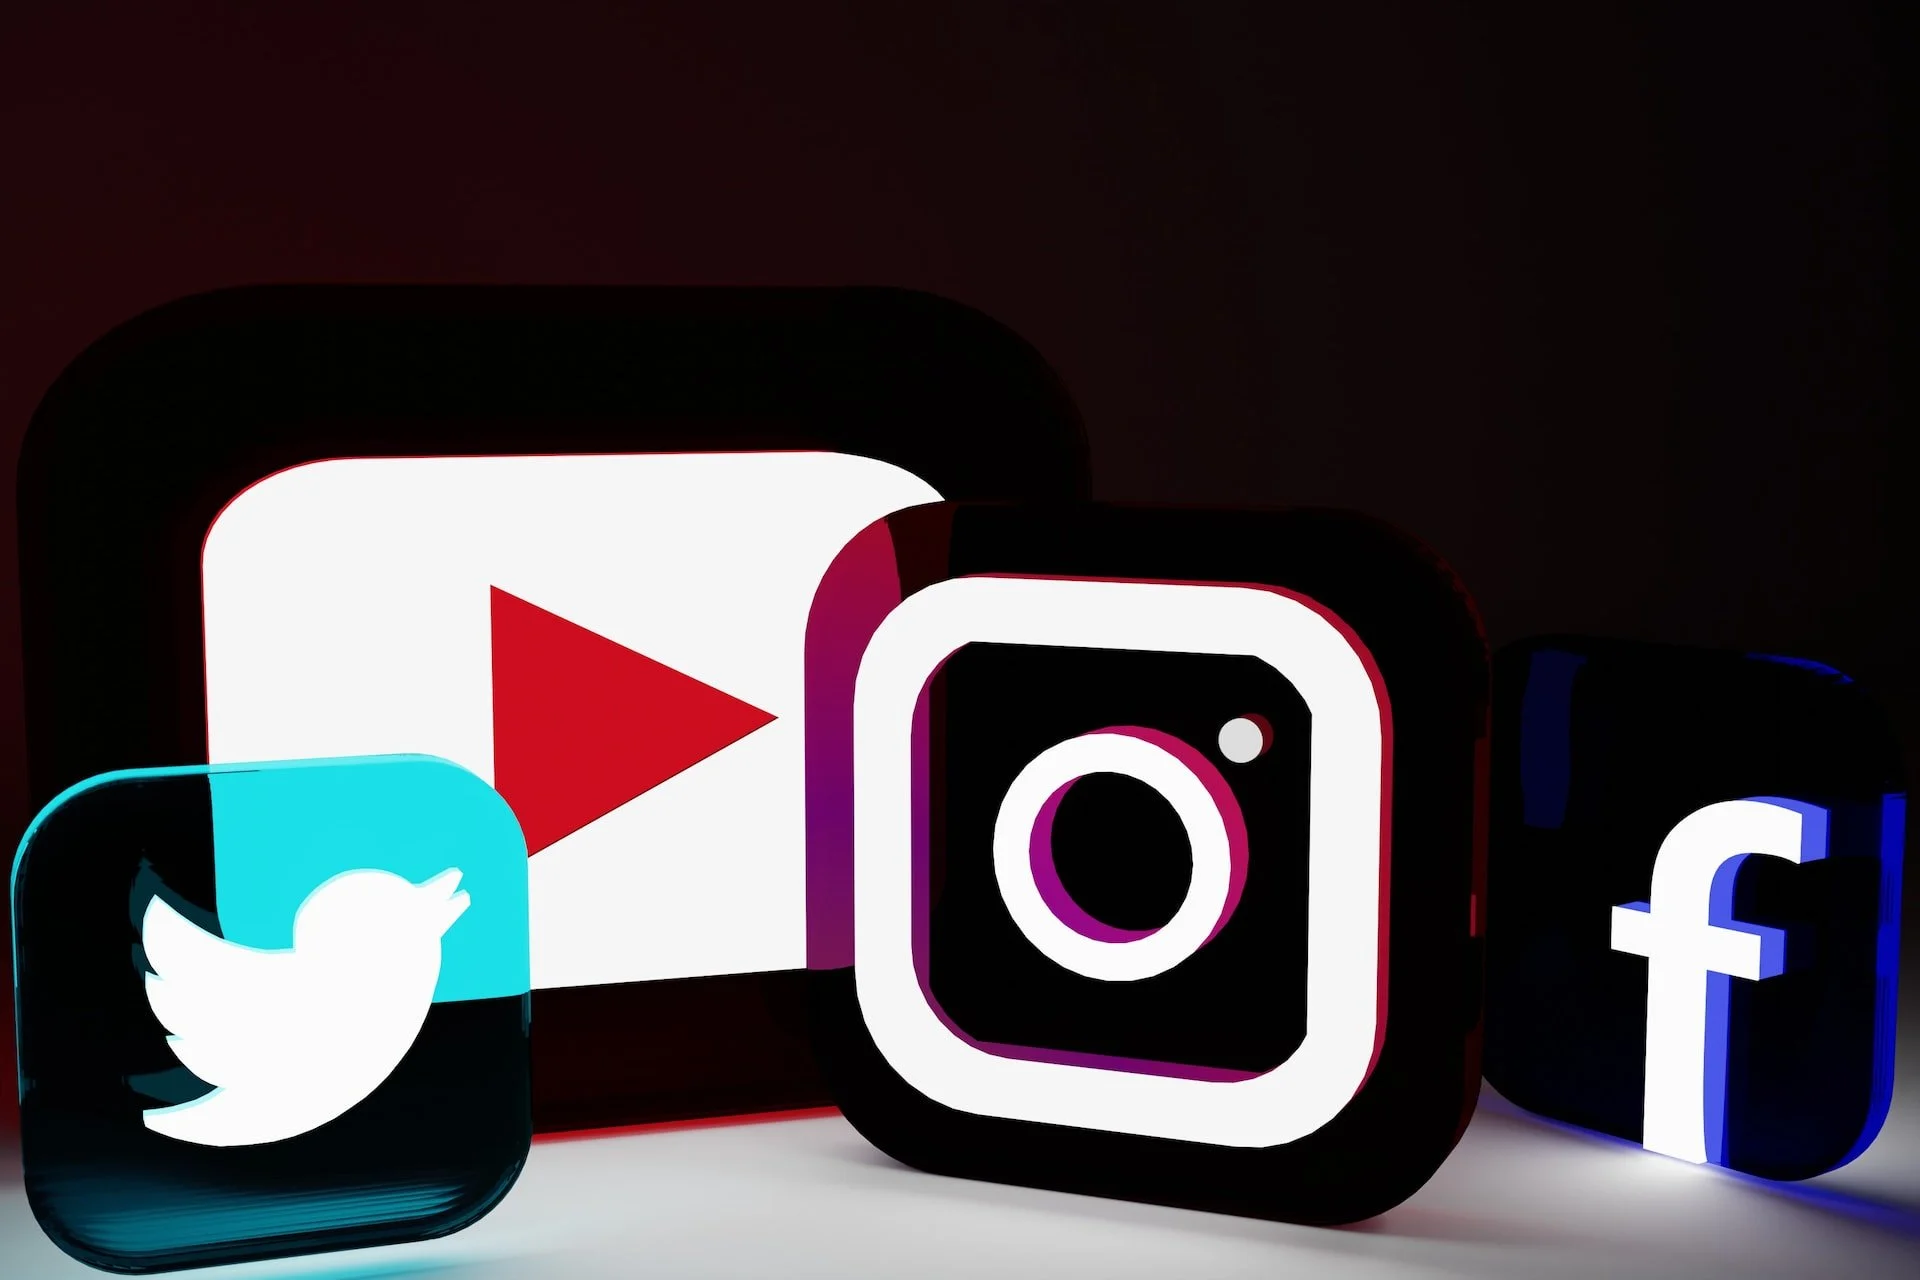 platforme de socializare Twitter, YouTube, Instagram și Facebook sigle transparente și iluminate cu neon